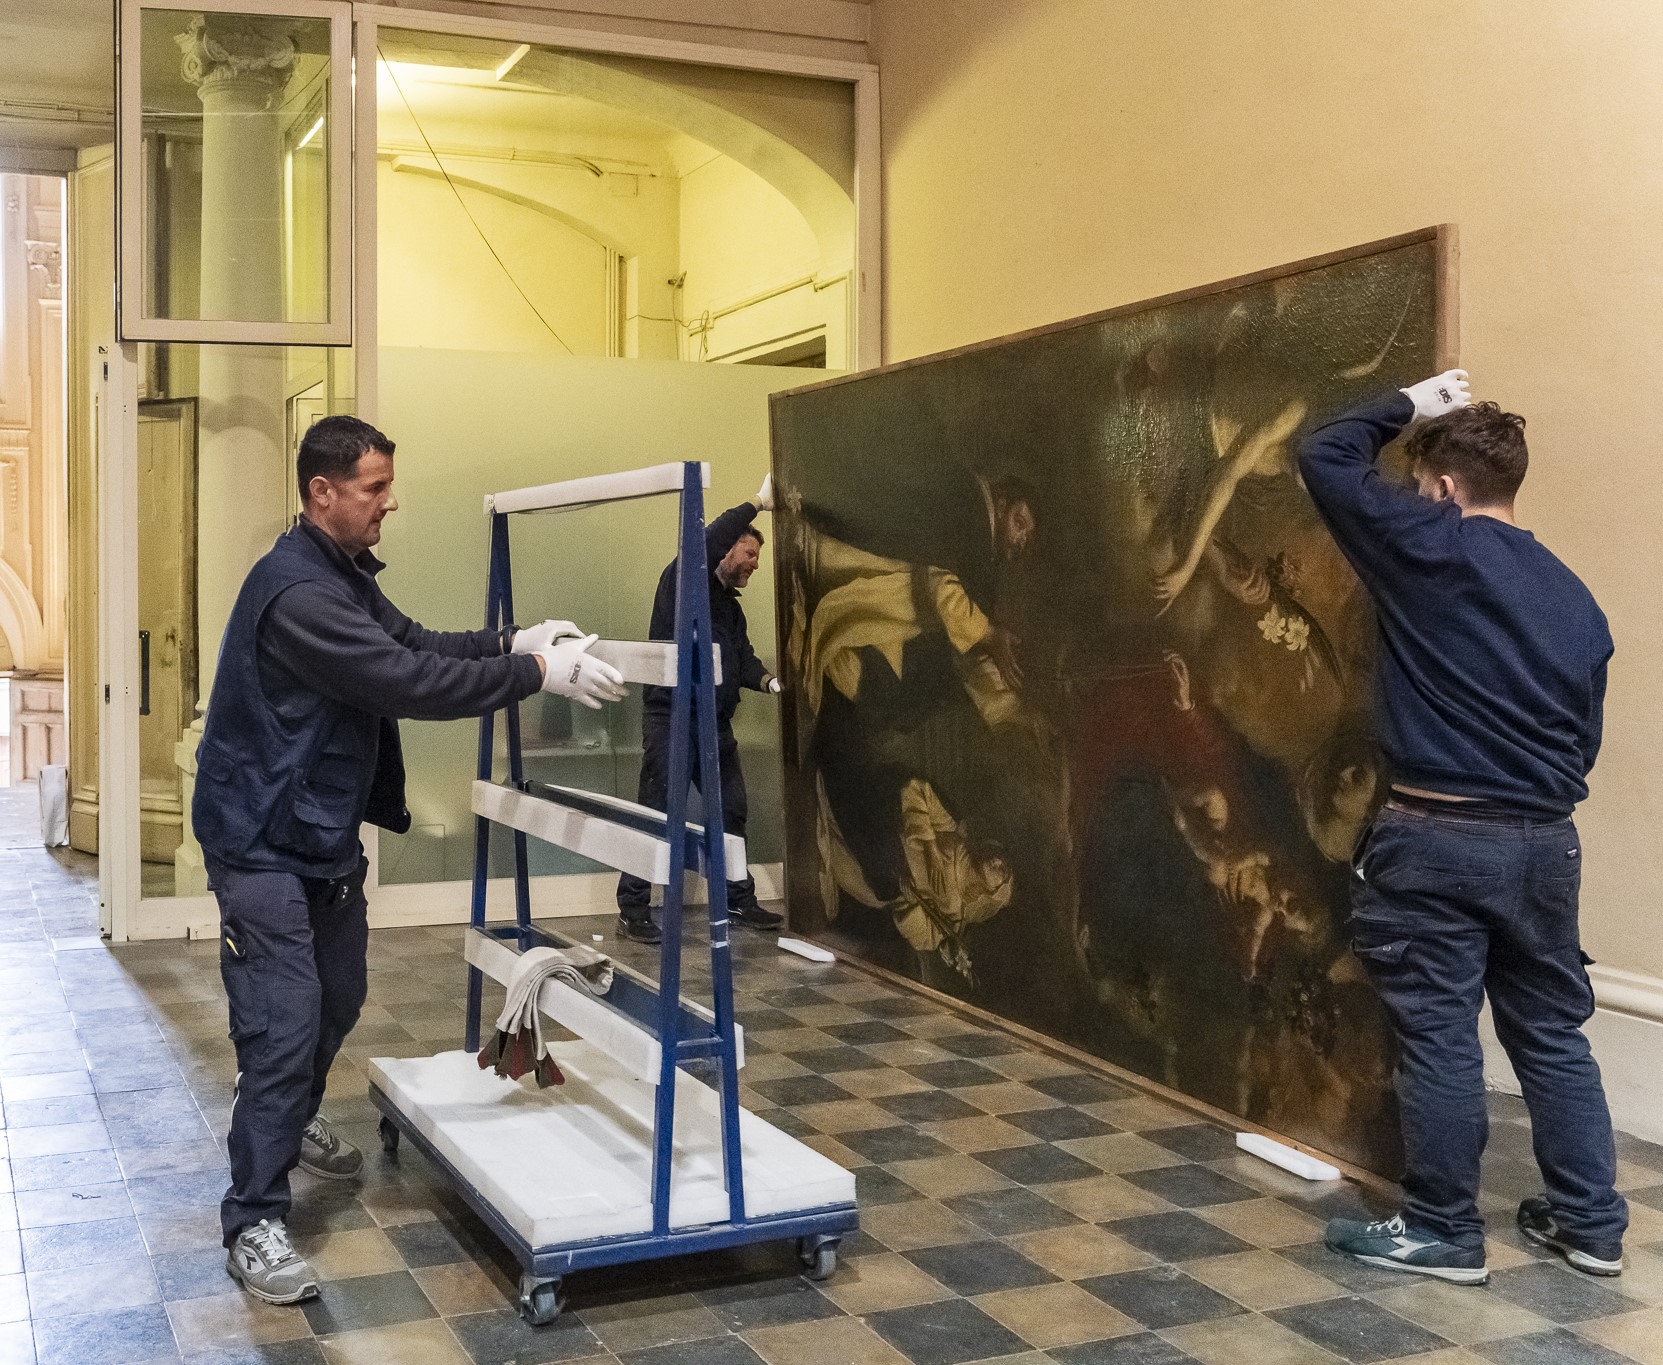 Gennari il Giovane, Madonna- posizionamento del quadro su carrello da salone centrale Palazzo del Merenda-Foto di Andrea Bonavita 